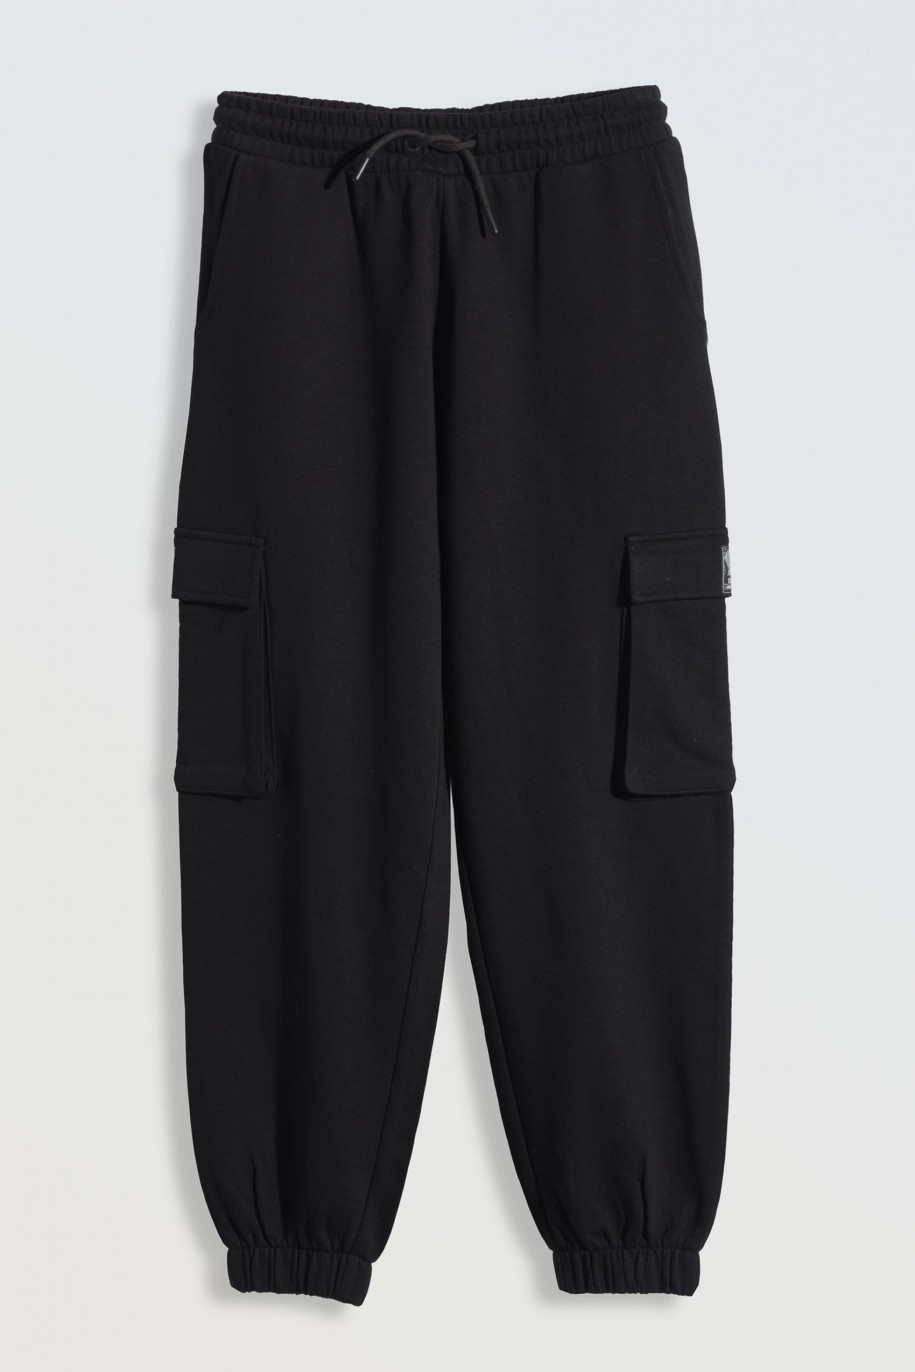 Czarne spodnie dresowe z przestrzennymi kieszeniami - 46272